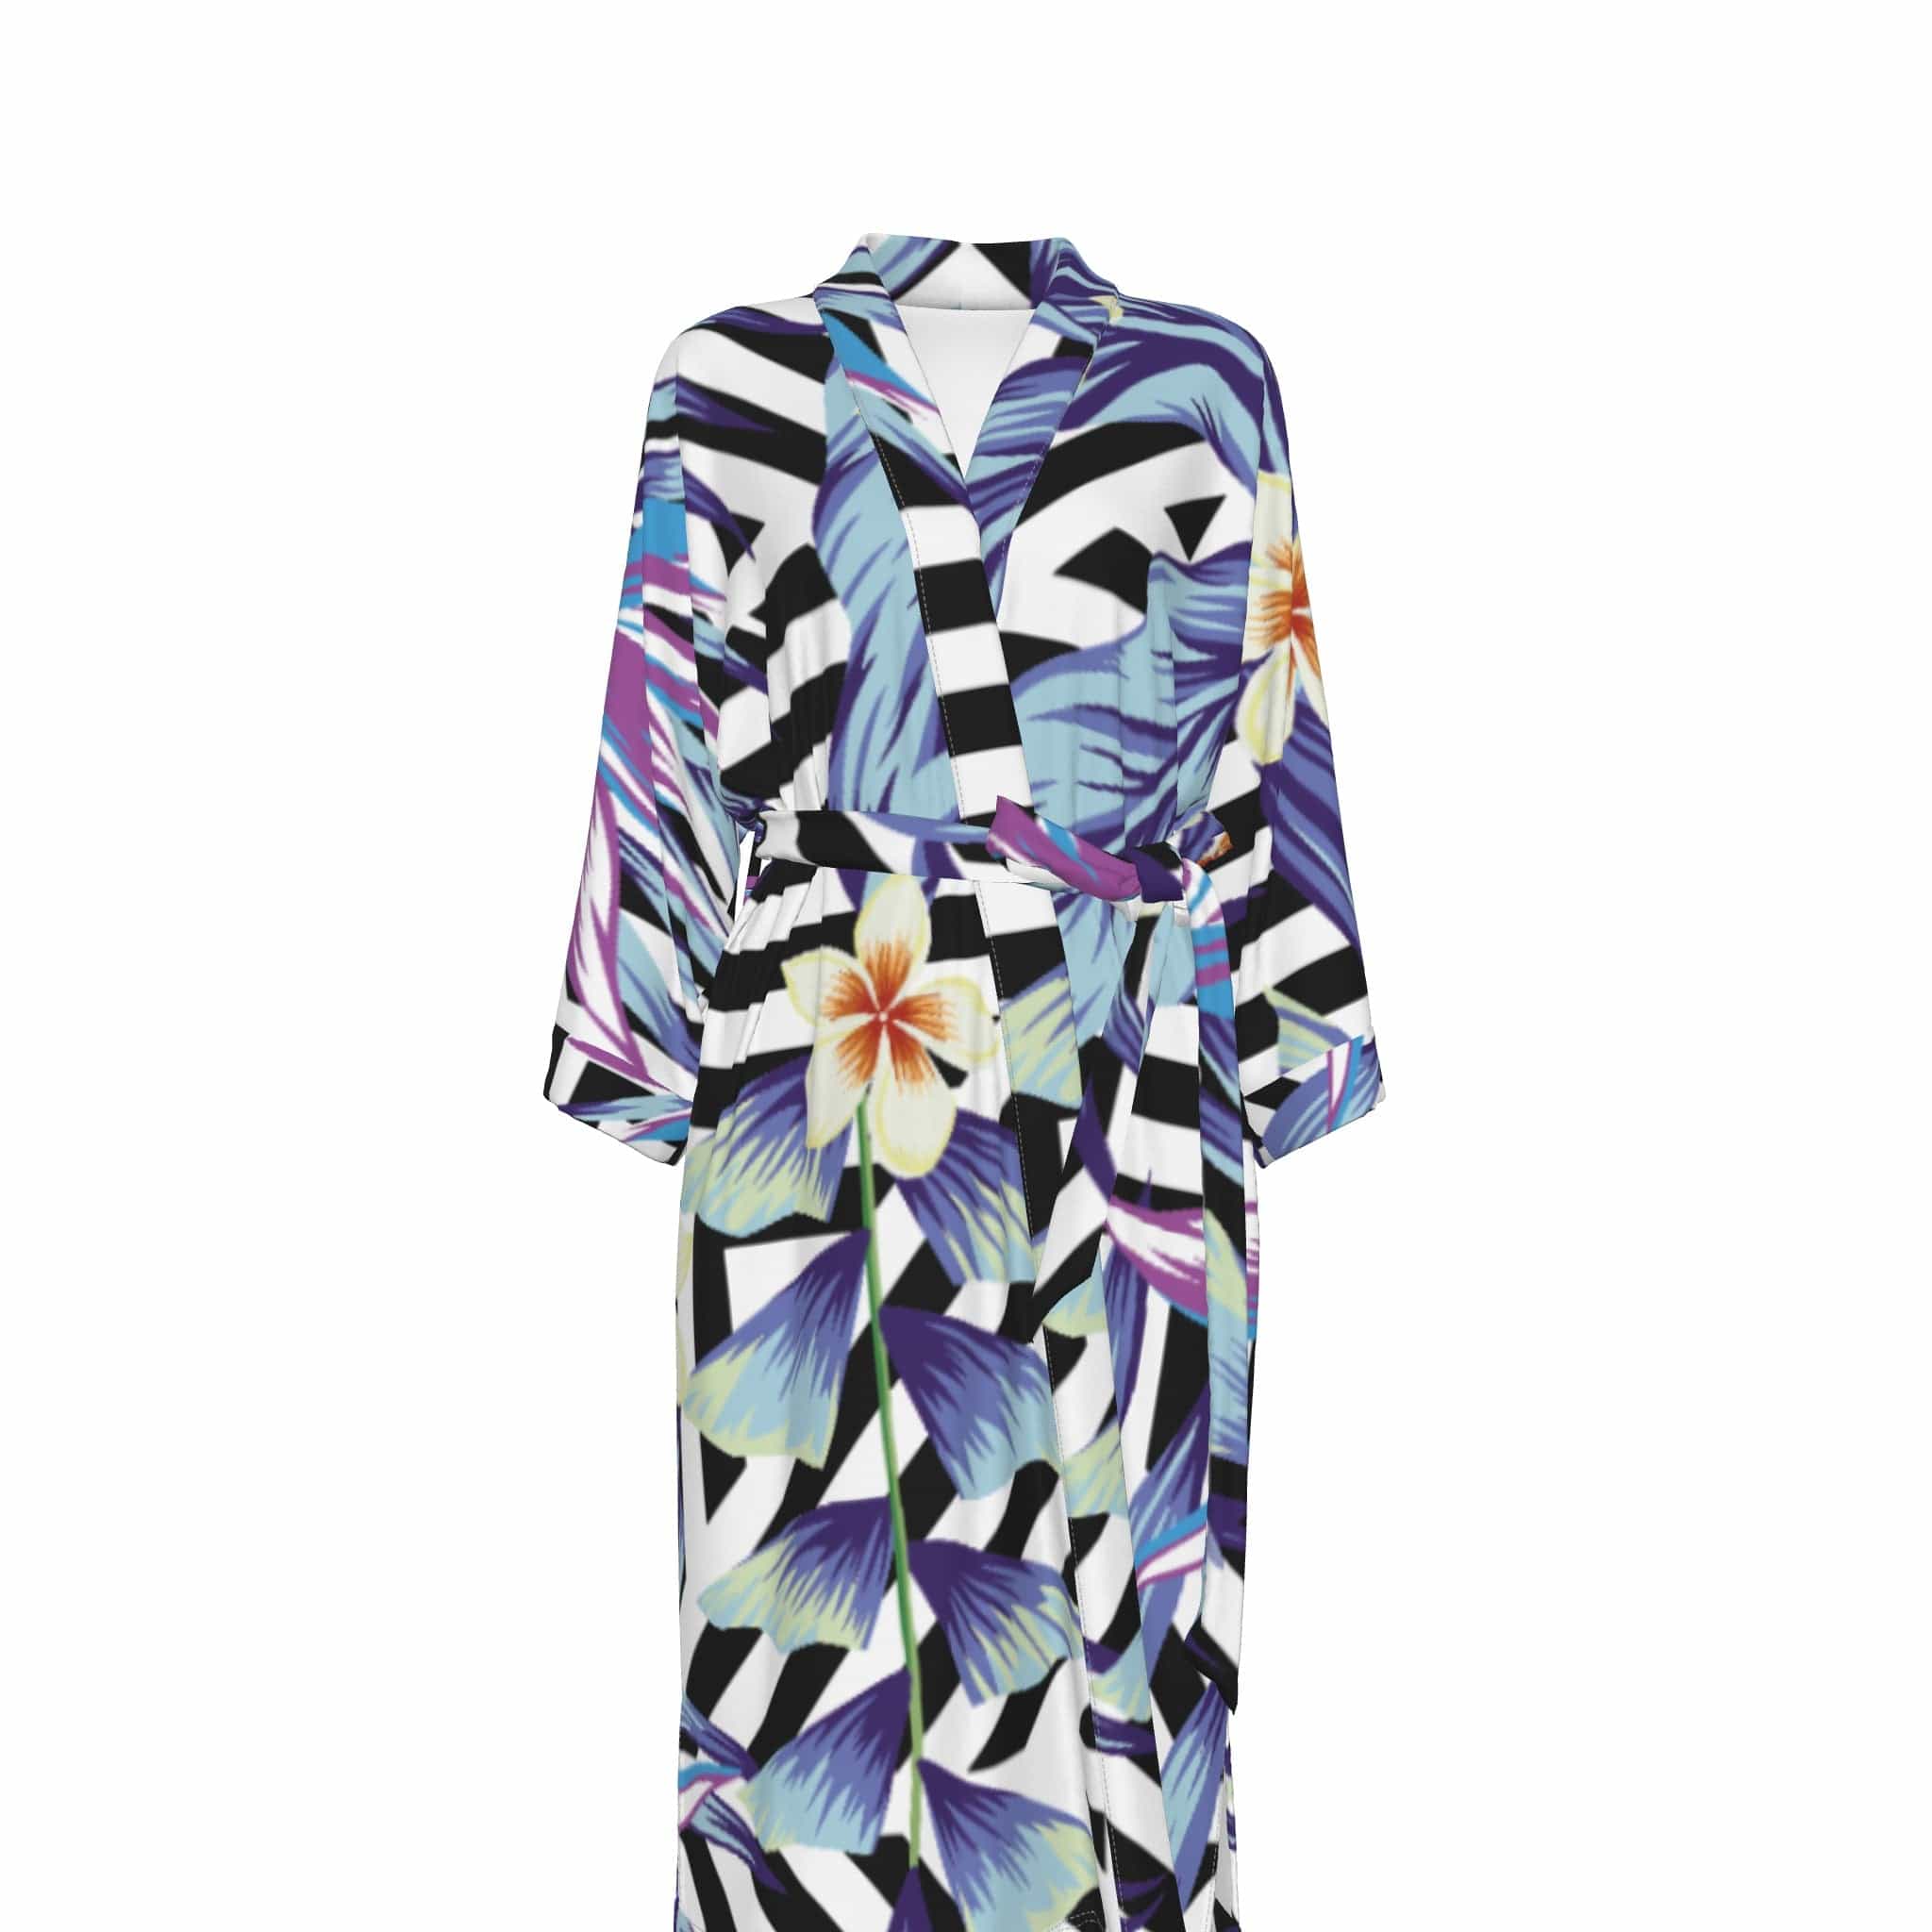 Yoycol 2XL / White All-Over Print Women's Satin Kimono Robe